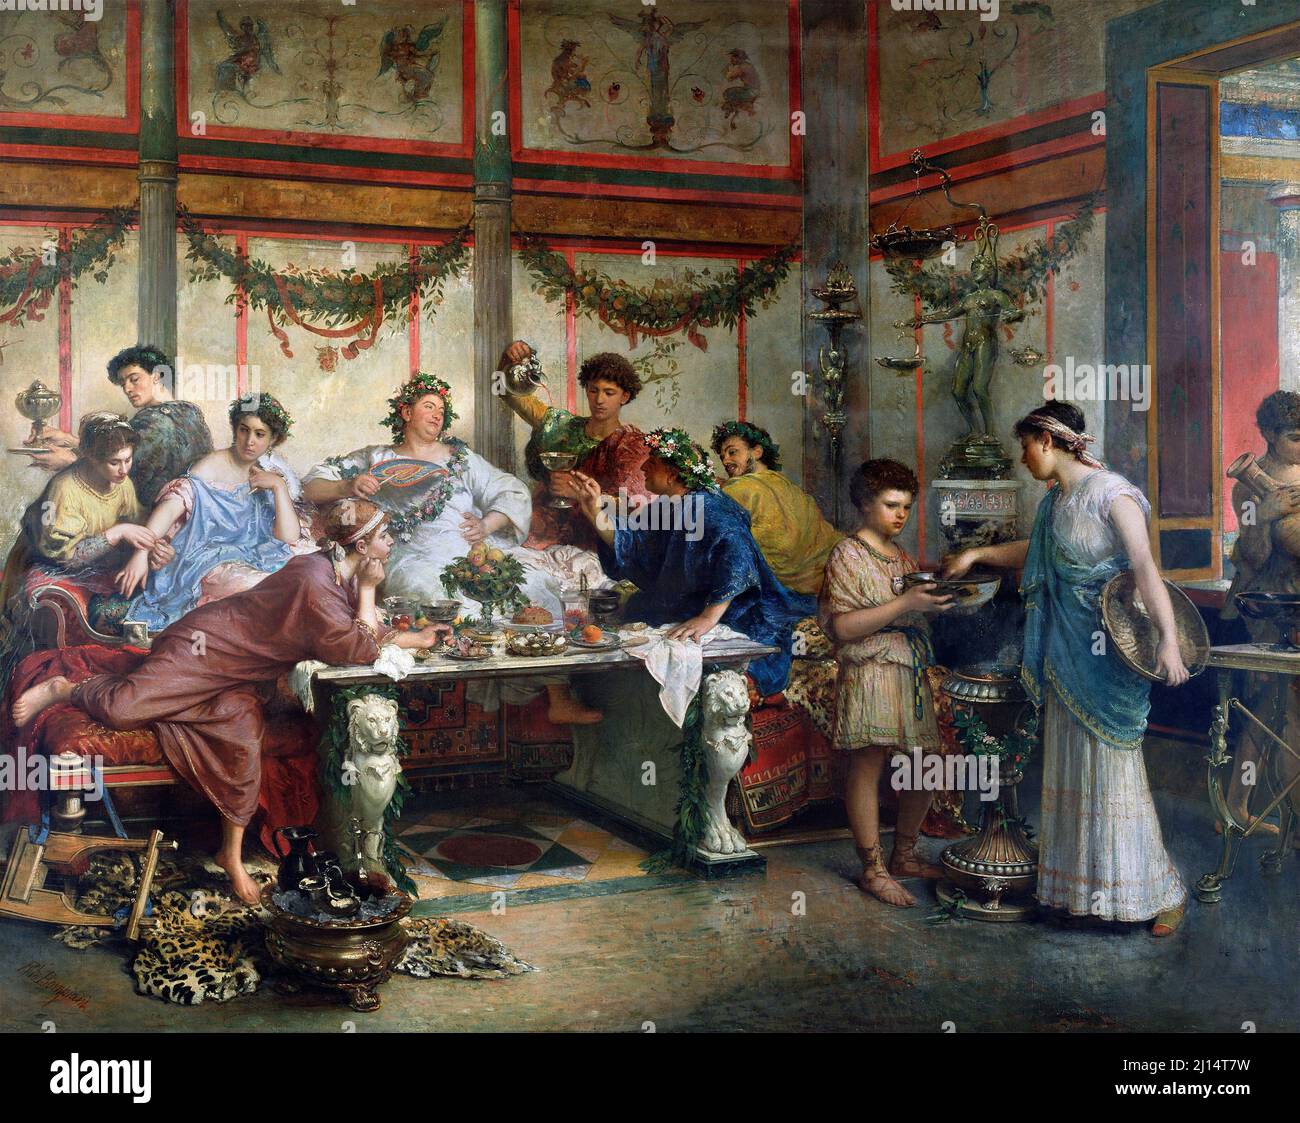 Fête romaine de l'artiste italien Roberto Bompiani (1821-1908), huile sur toile, fin 19th siècle Banque D'Images